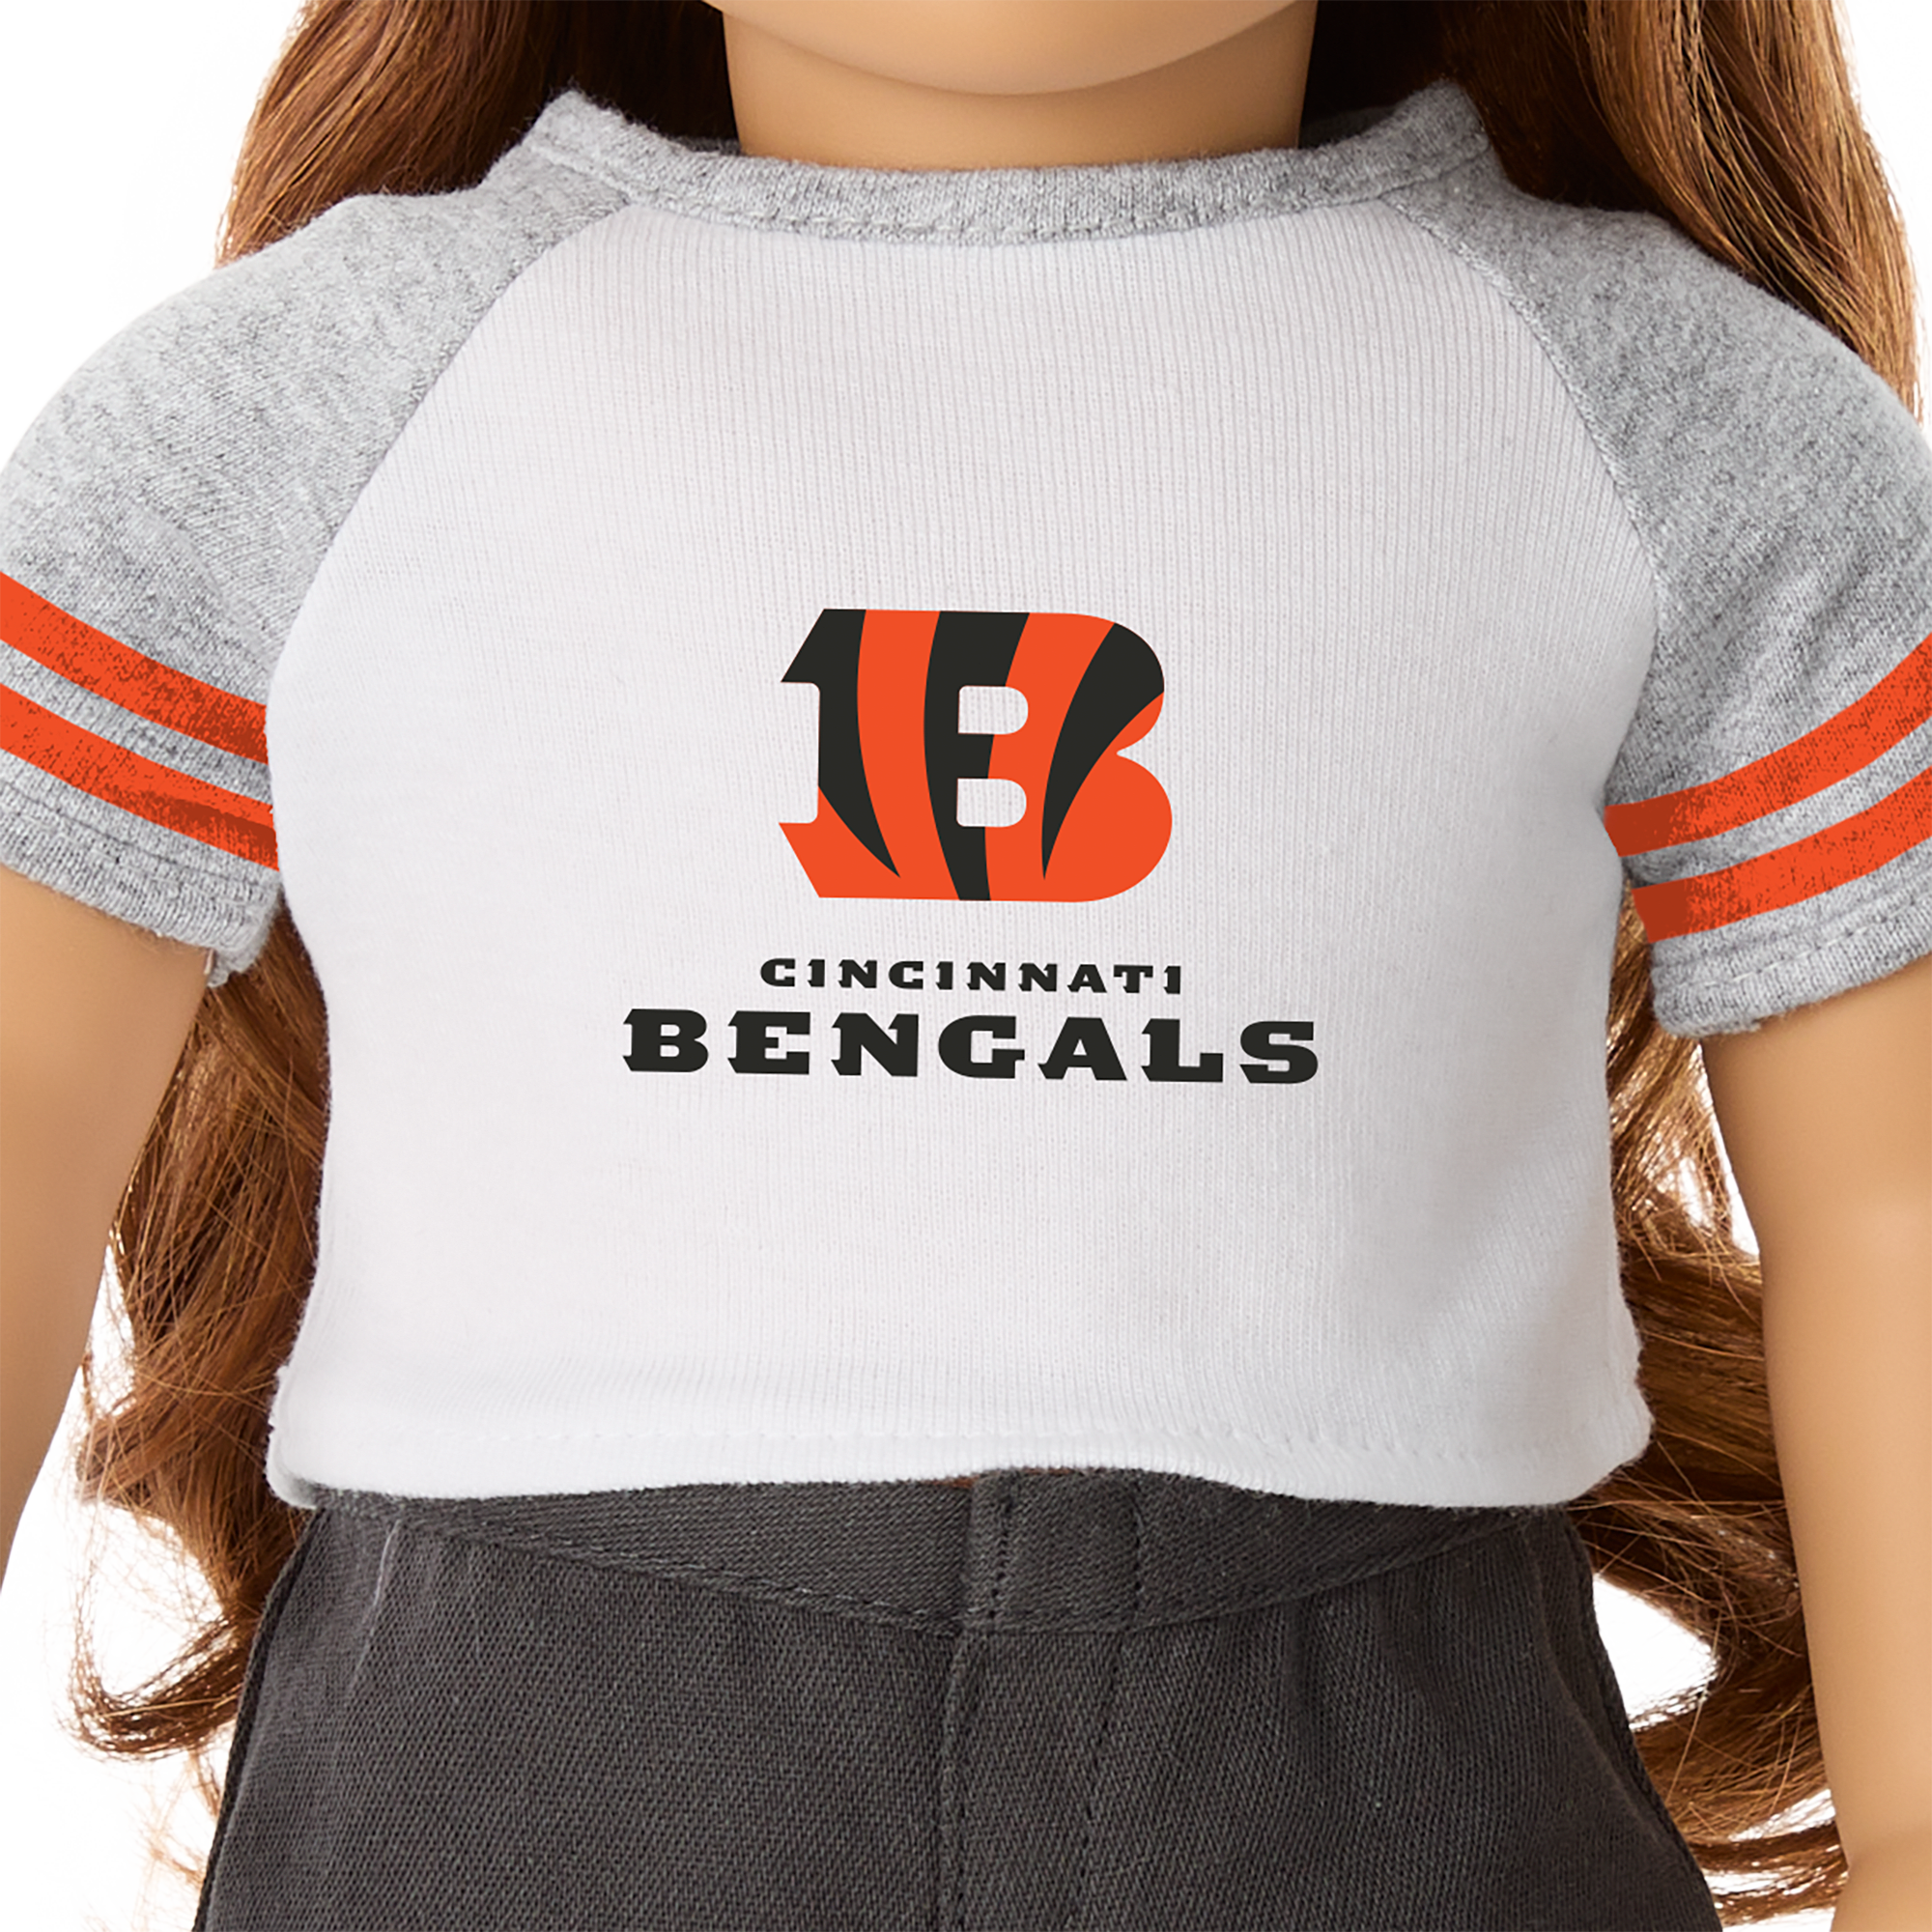 American Girl® x NFL Cincinnati Bengals Fan Tee for 18-inch Dolls